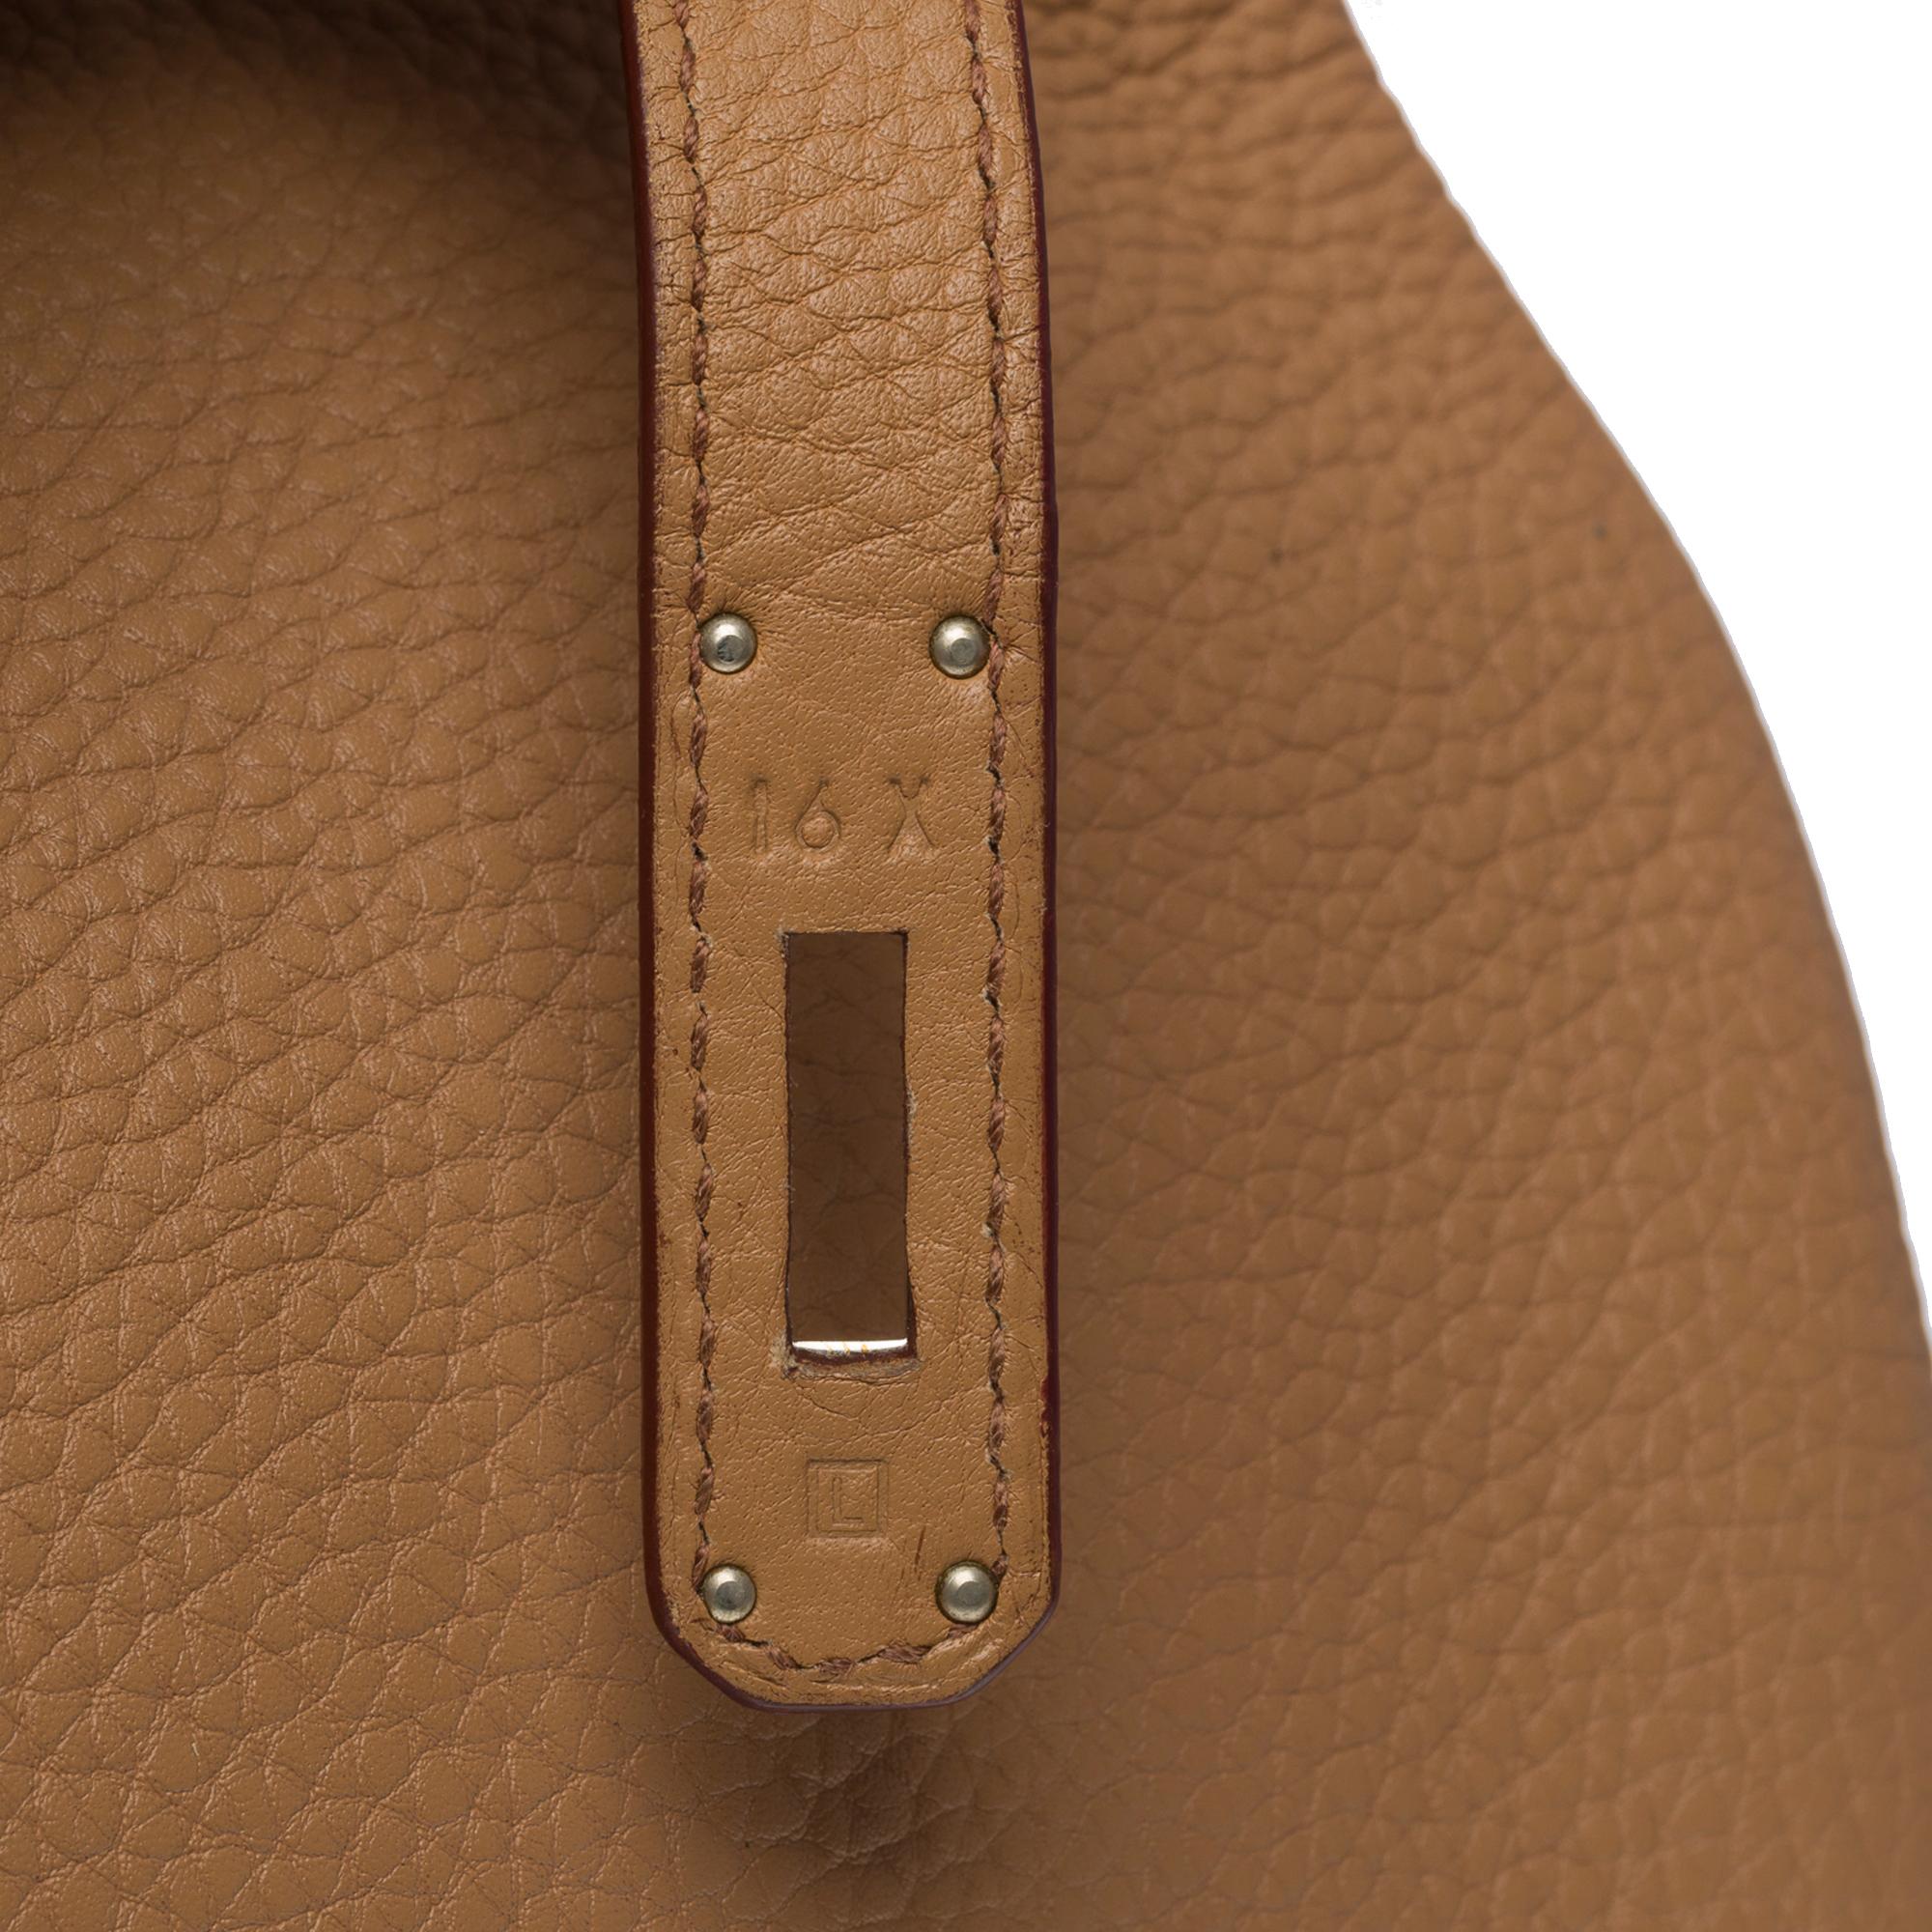 Hermes Birkin 40 handbag in Tabac Togo leather, SHW For Sale 4